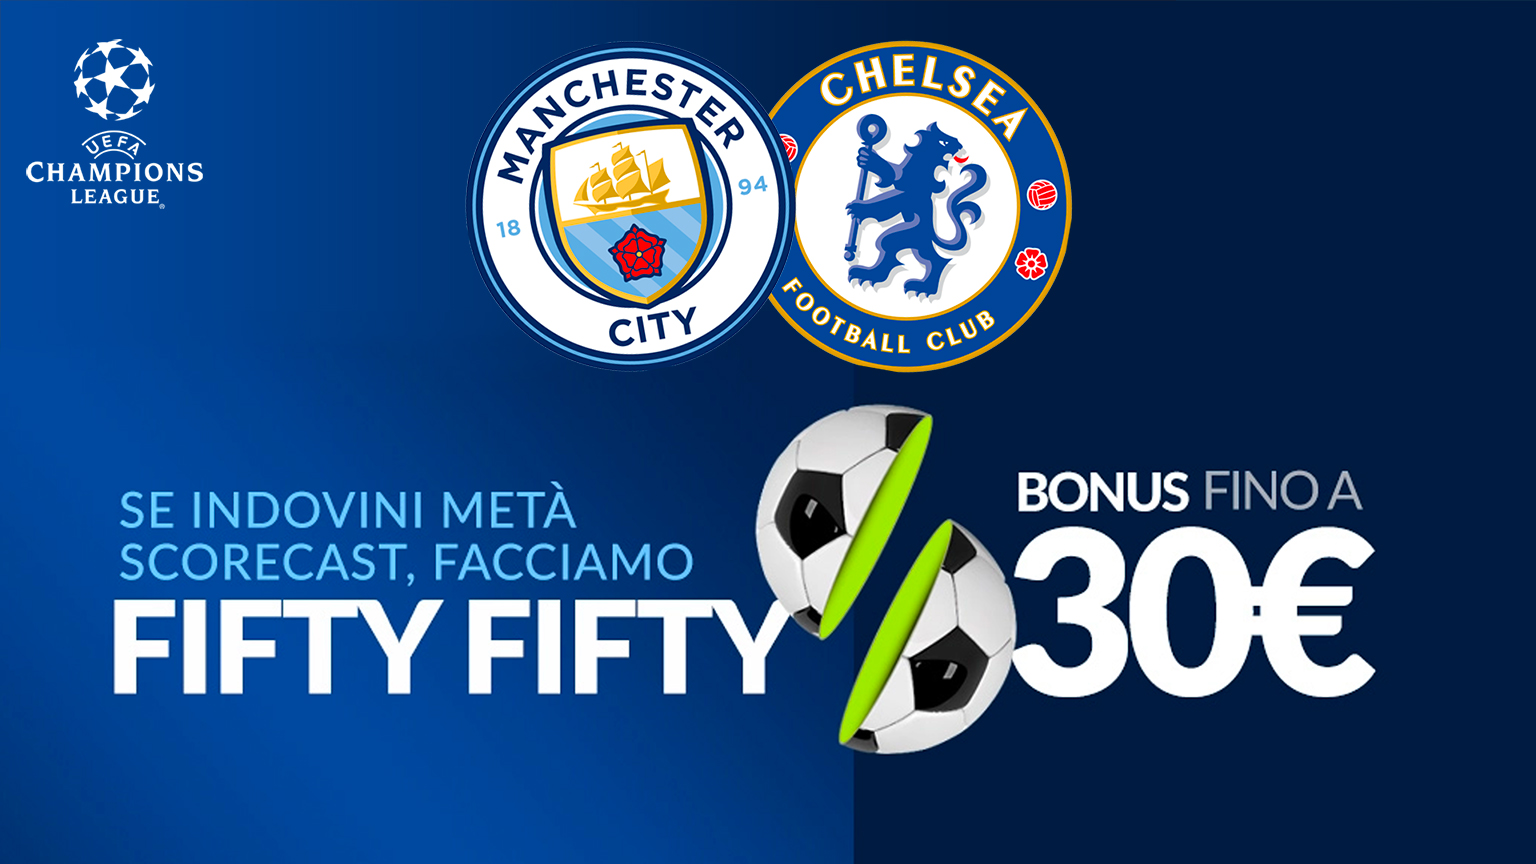 Manchester City Chelsea Bonus Eurobet